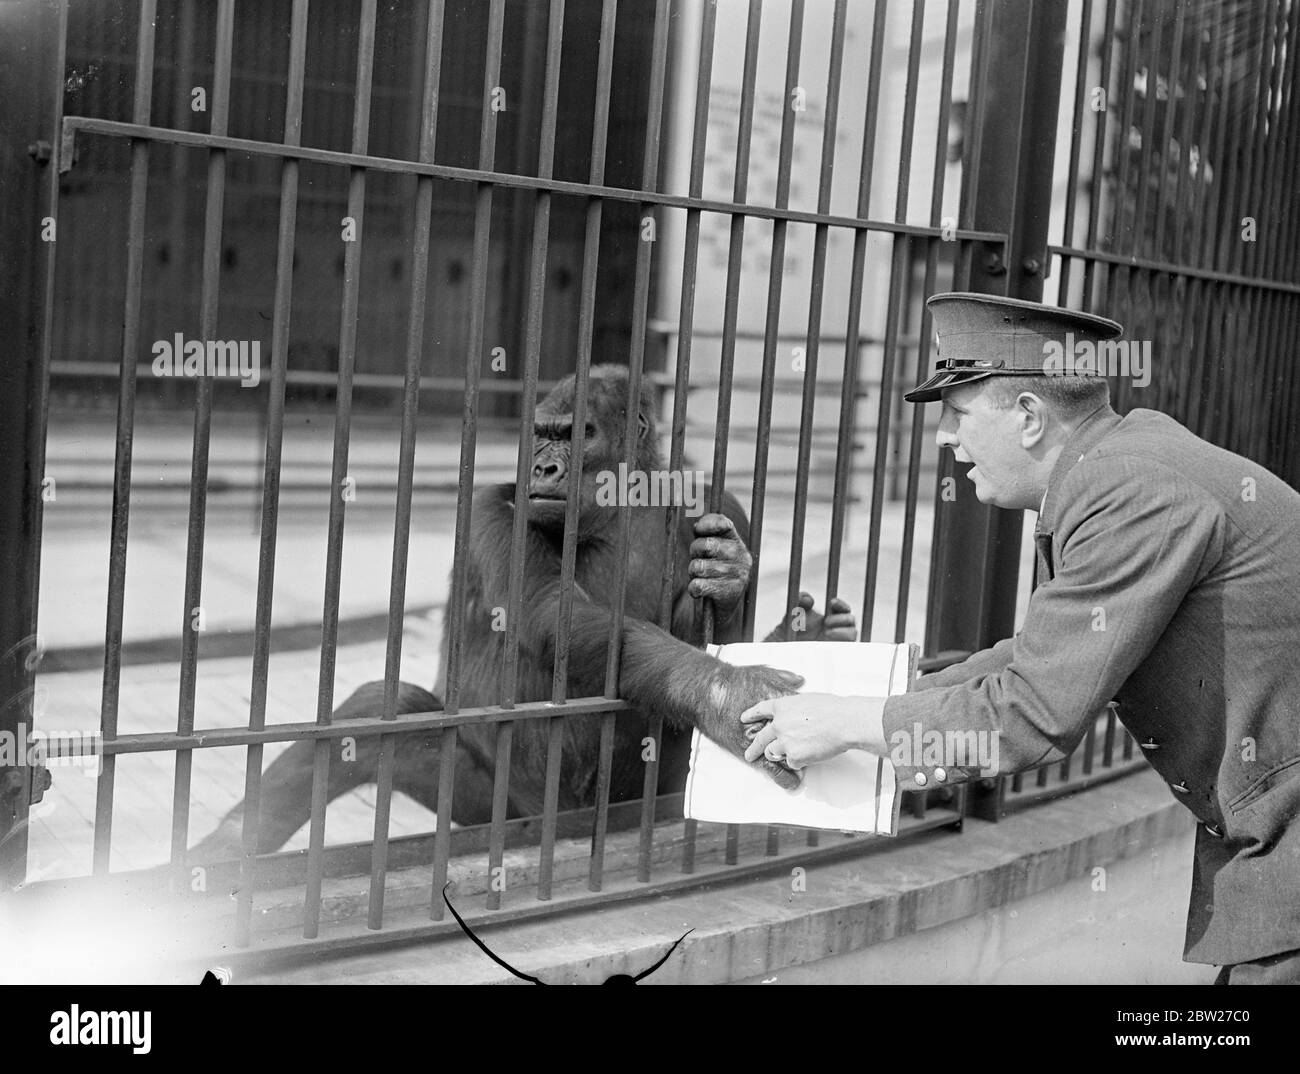 Moina, der Gorilla des Londoner Zoos, sieht angemessen hart aus, als die Torhüterin R. Smith ihre Fingerabdrücke nimmt. Keeper Smith hatte versucht, die Fingerabdrücke der Gorillas Mok und Moina zum Vergleich zu nehmen, und hat es sehr lebhaft gemacht. Juli 1937 Stockfoto